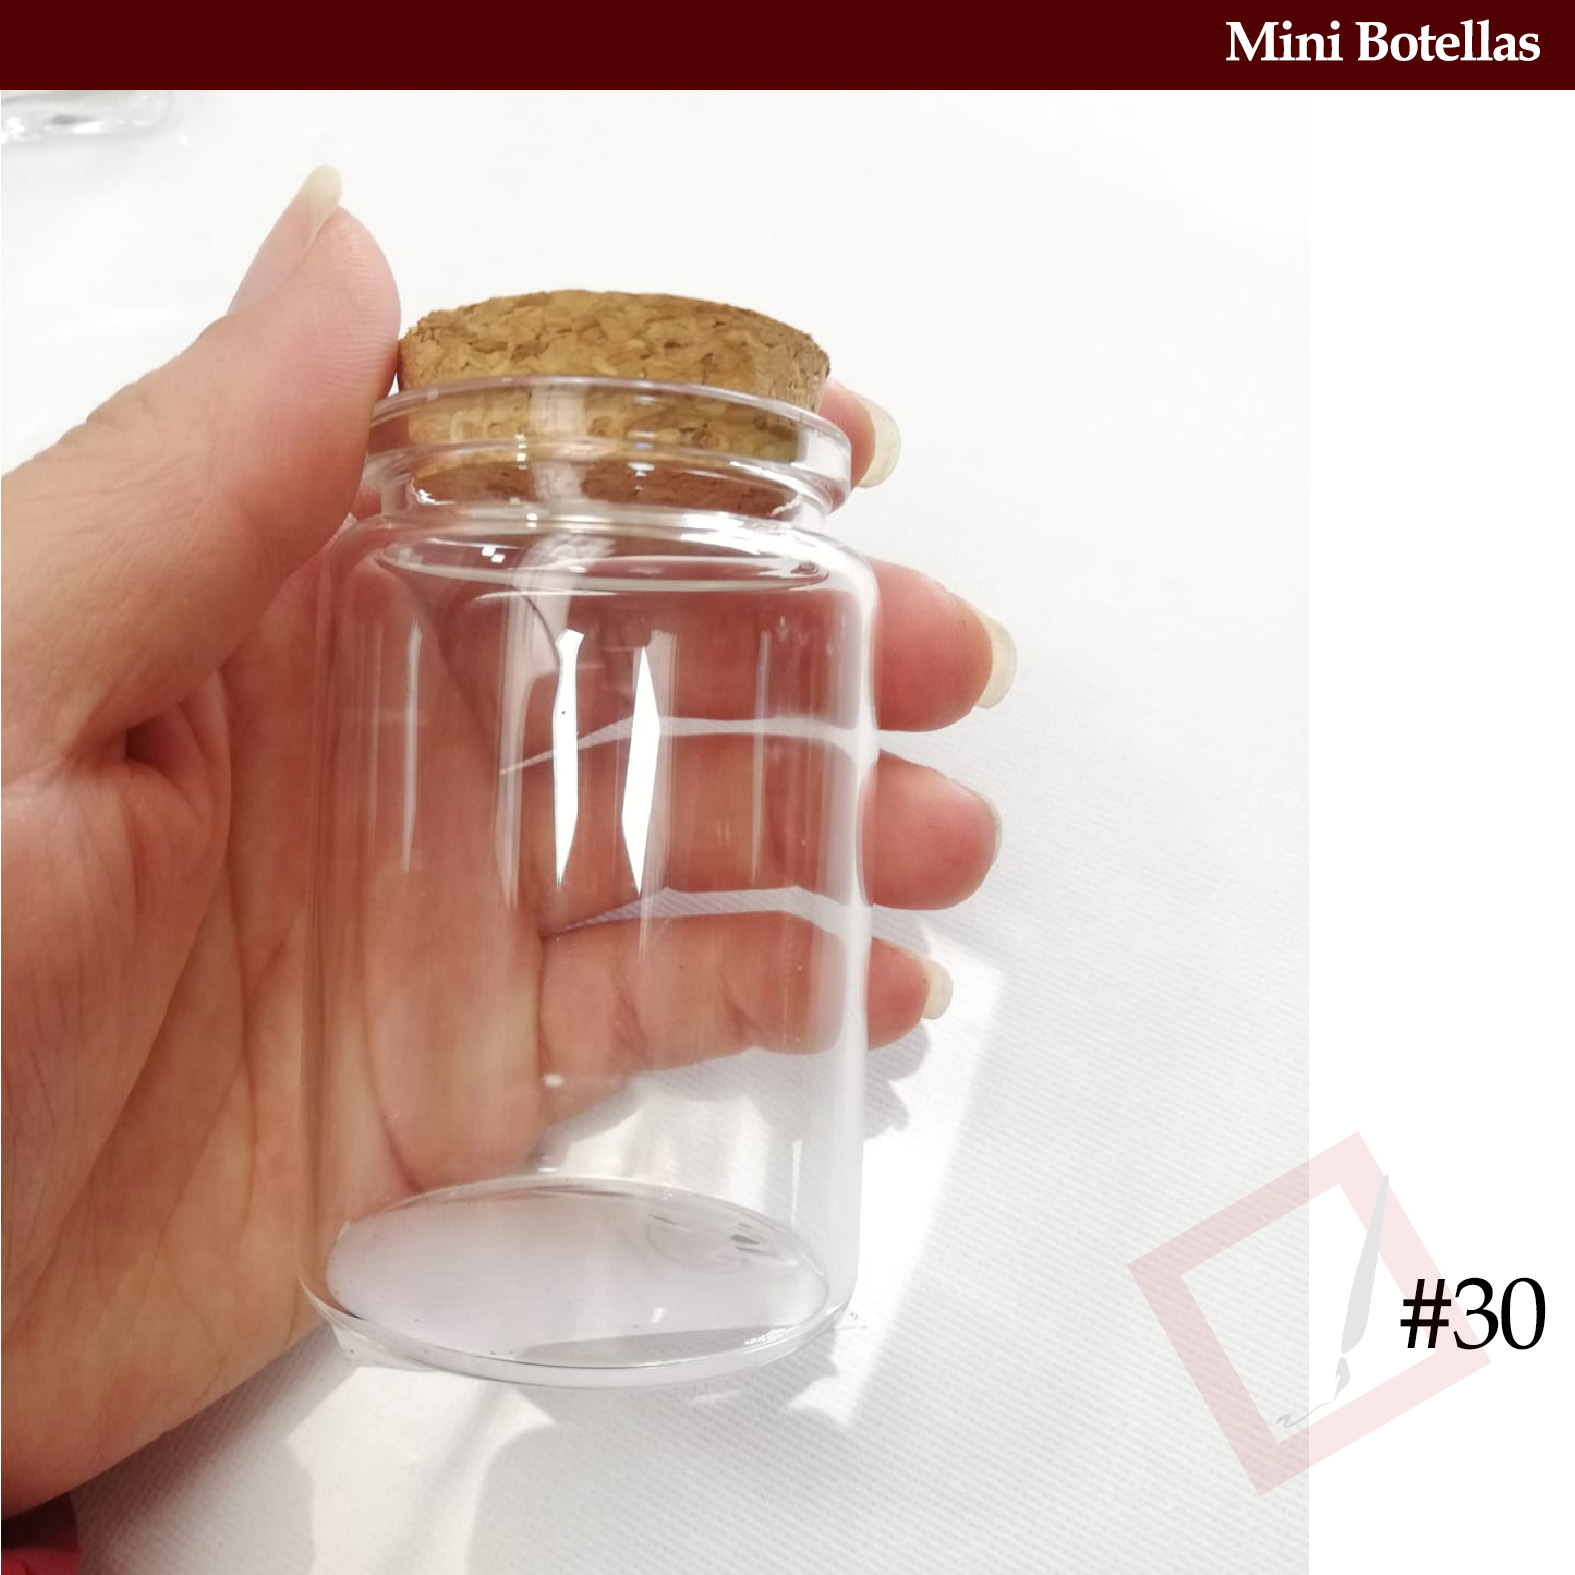 Mini botellas - Frascos y Botellas de Vidrio - Ecuador